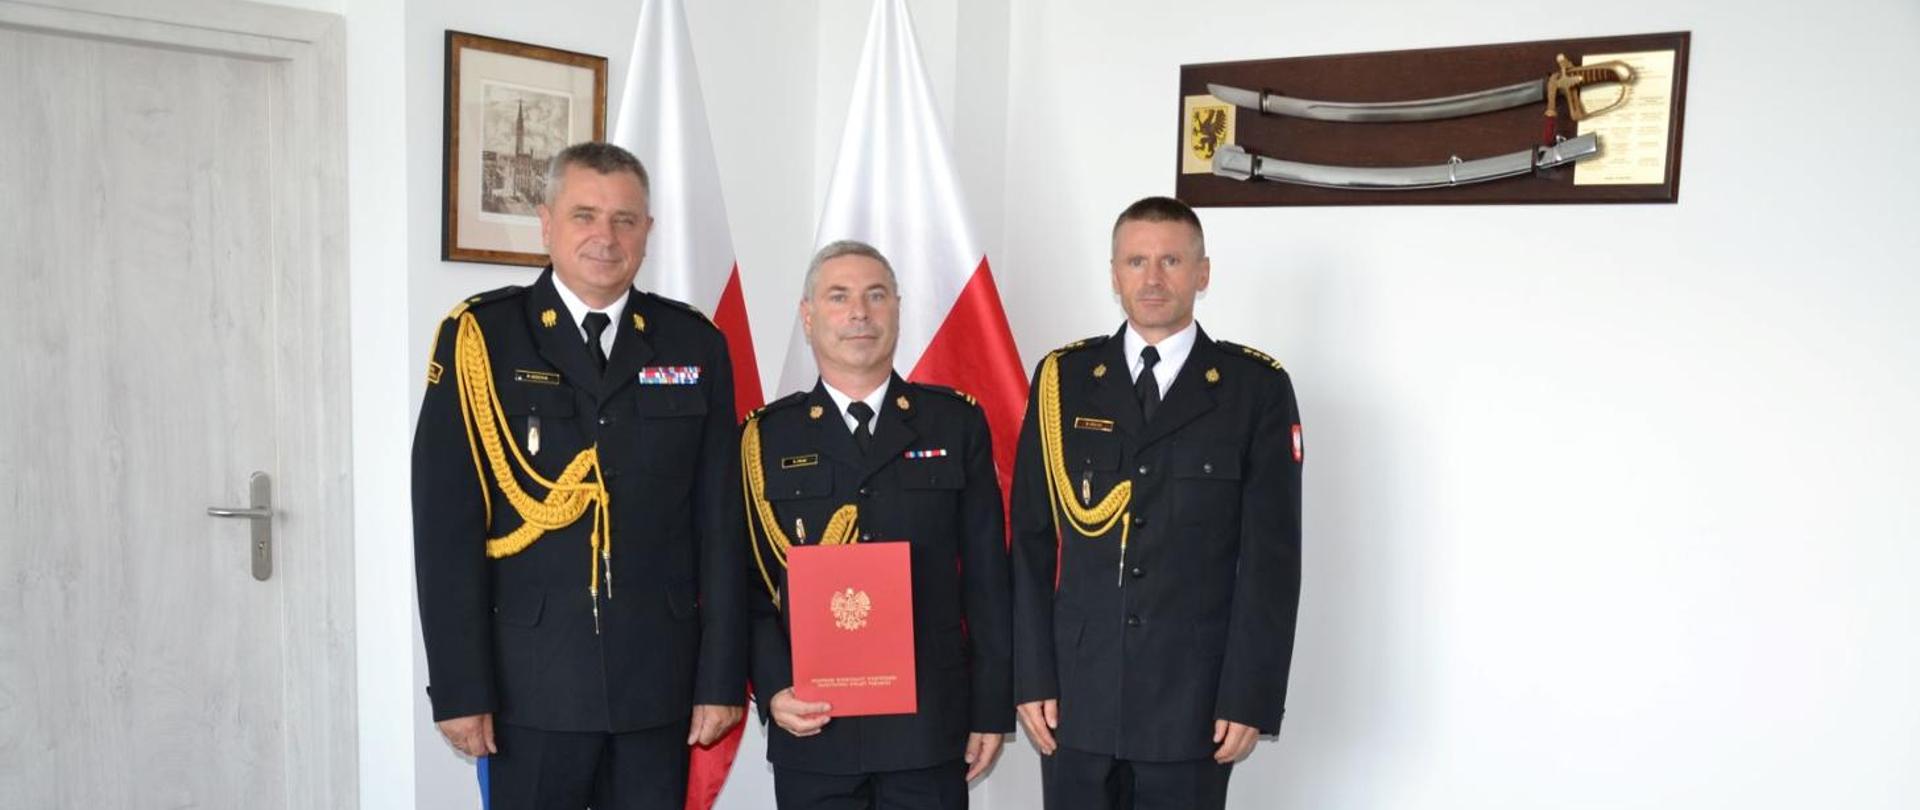 Pomorski komendant wojewódzki Państwowej Straży Pożarnej stoi wraz ze strażakami, ubrani w mundury wyjściowe, jeden z nich trzyma czerwoną teczkę za nimi stoją flagi Polski.